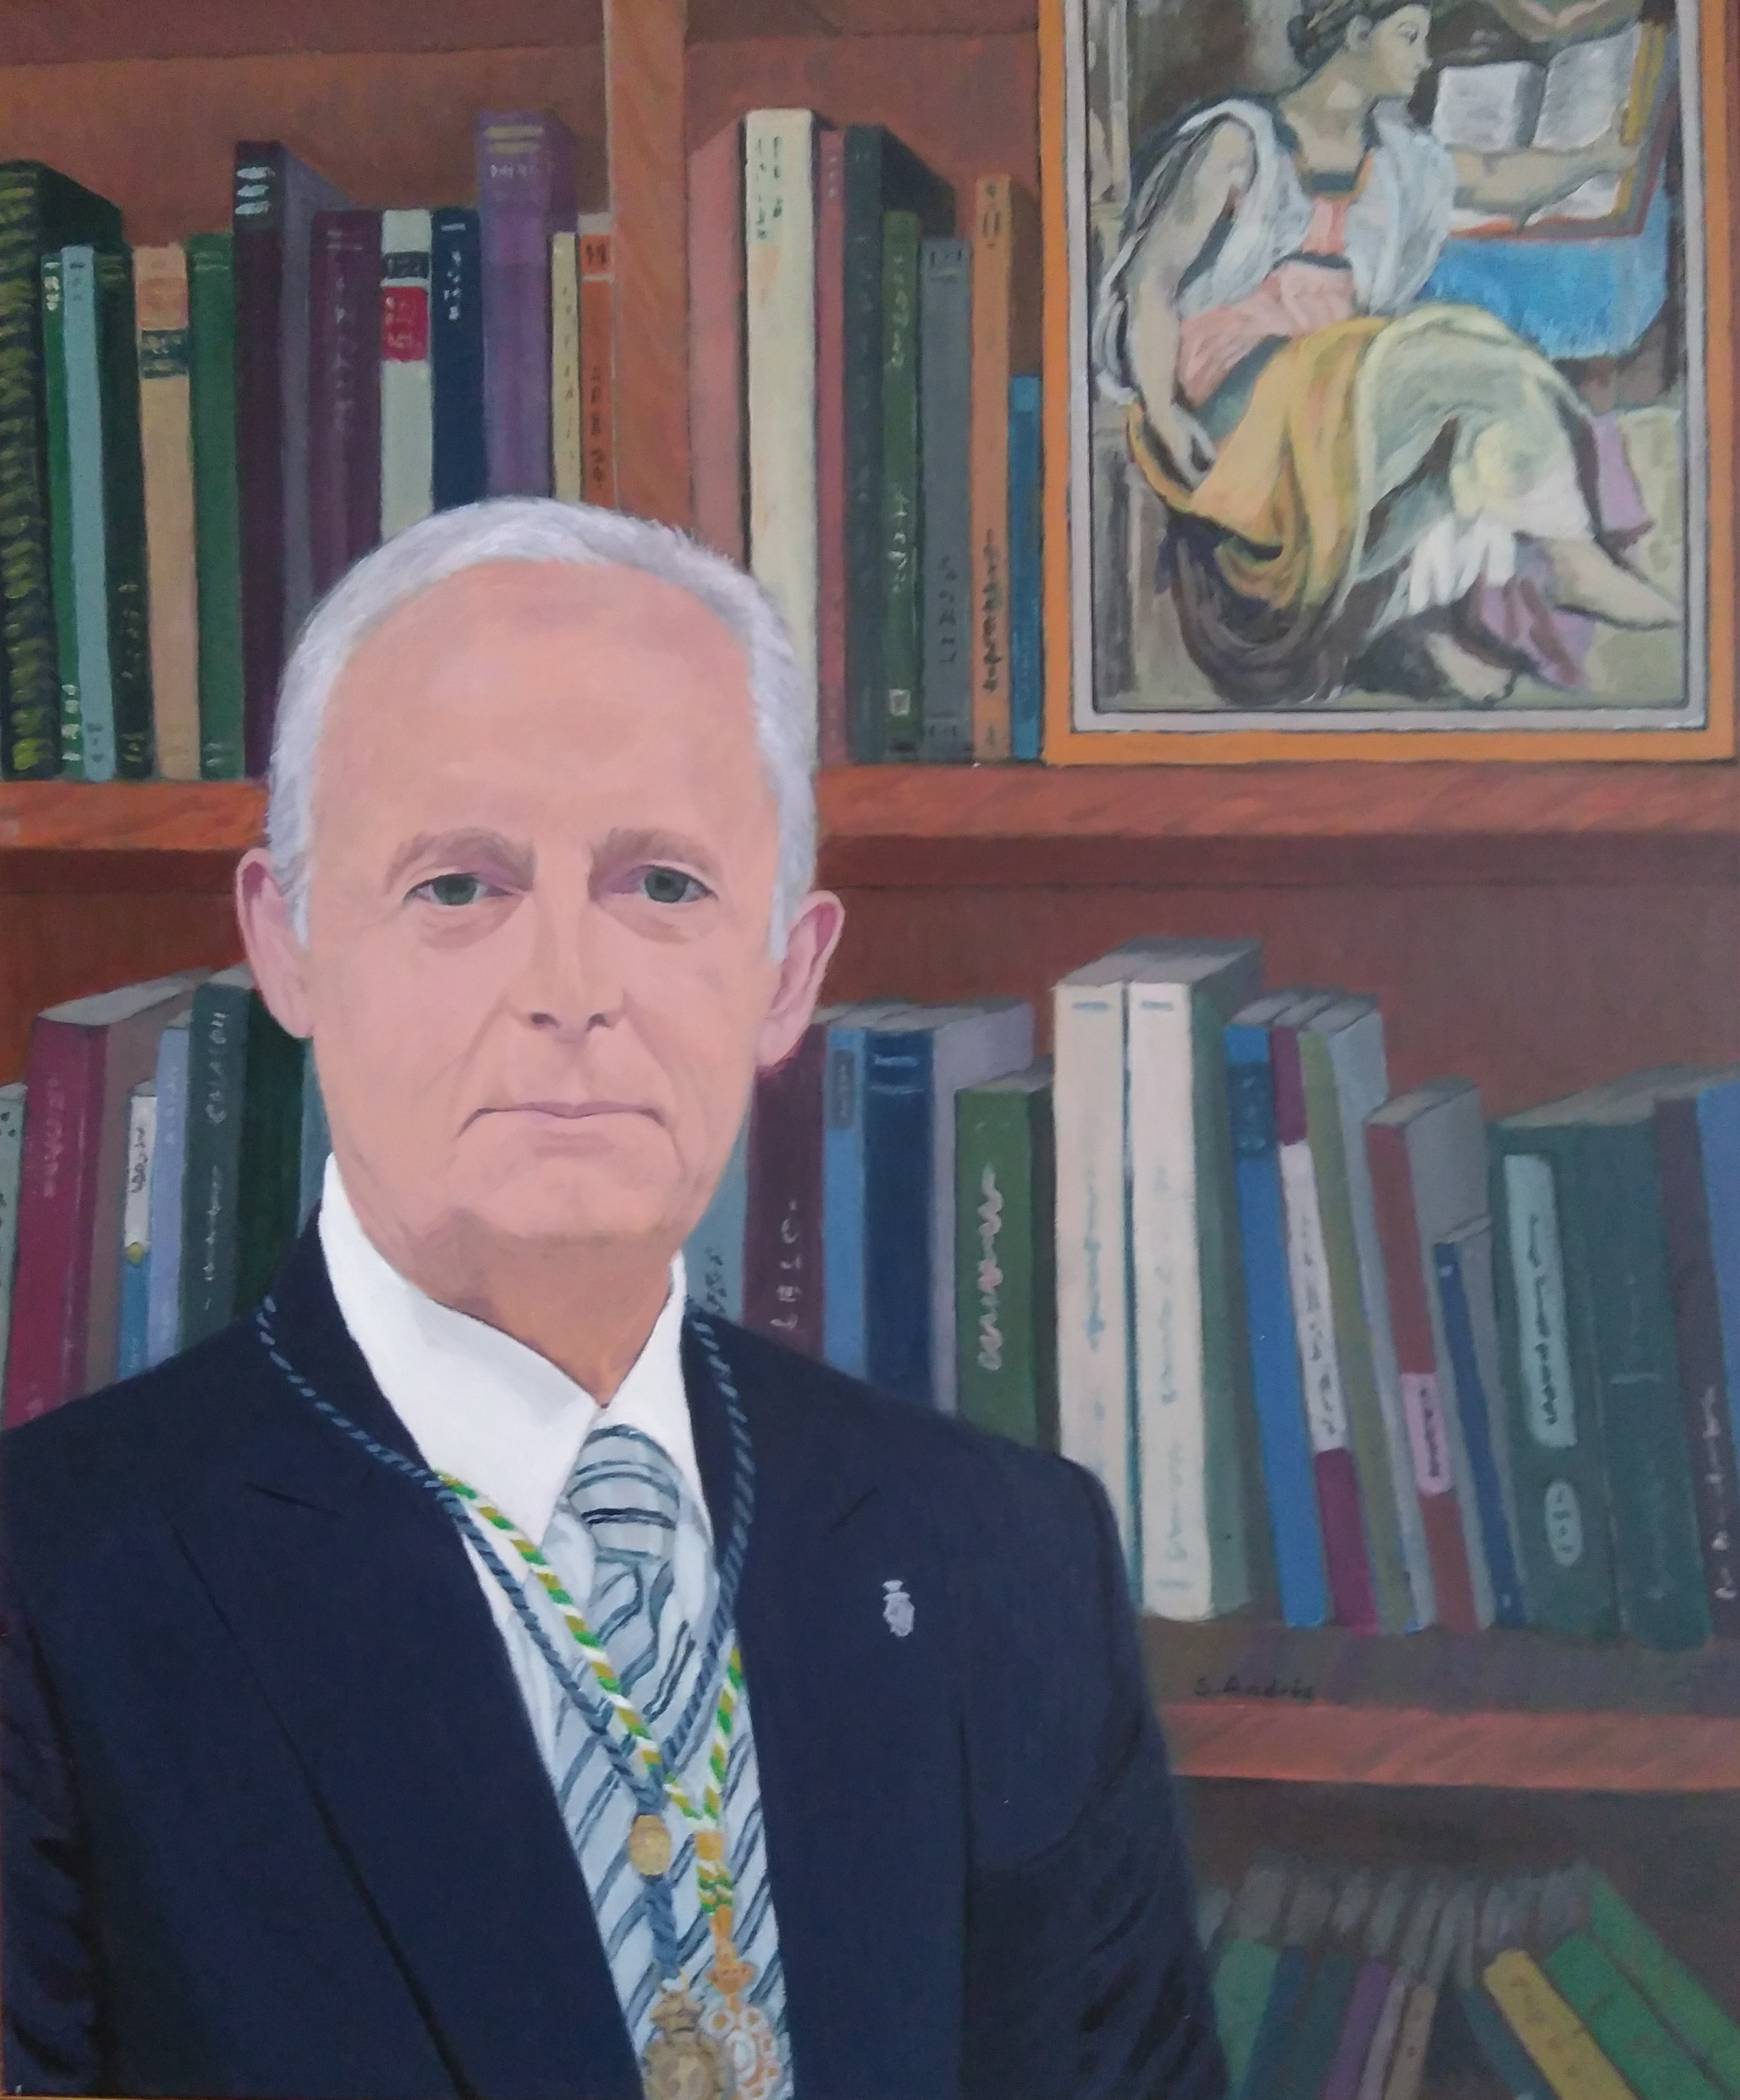 Excmo. Sr. D. 
Fernando González Caballero, Presidente de la Academia de Ciencias Matemáticas, Físico-Químicas y Naturales de Granada.